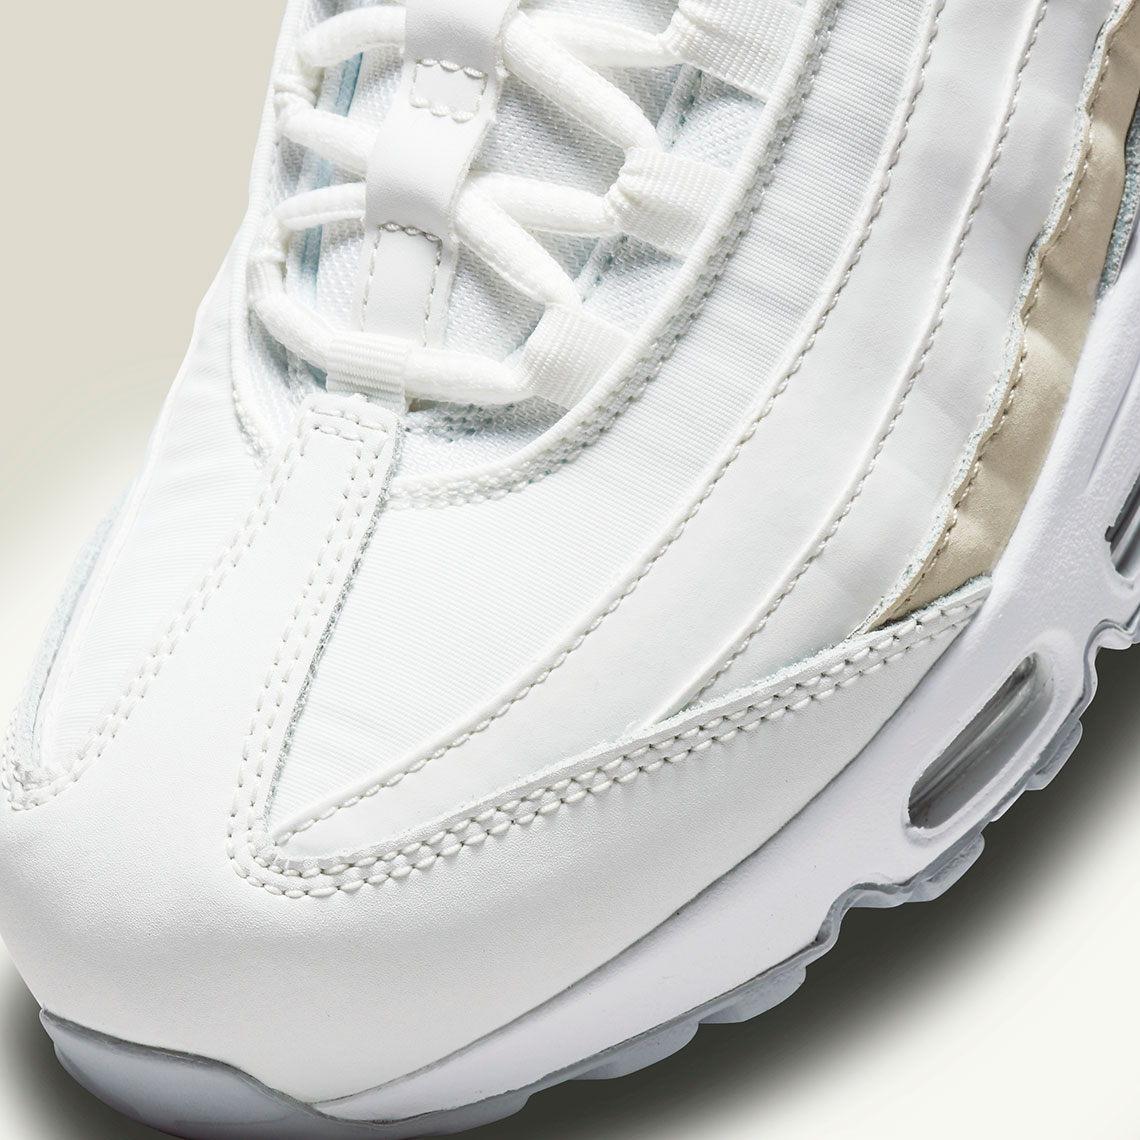 Nike Air Max 95 Wmns White Beige Grey Da8731 100 6